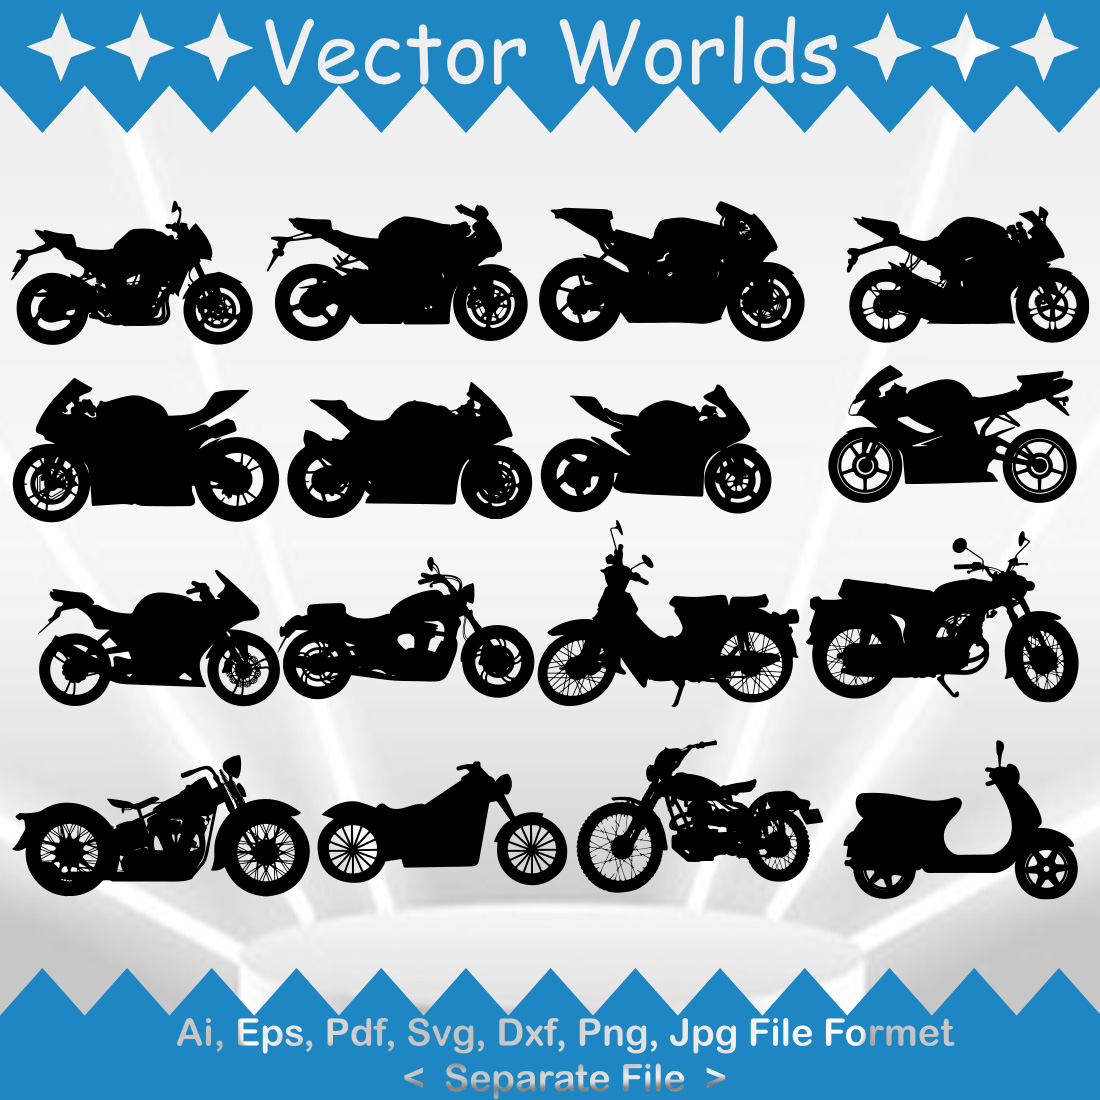 Motor Bike SVG Vector Design cover image.